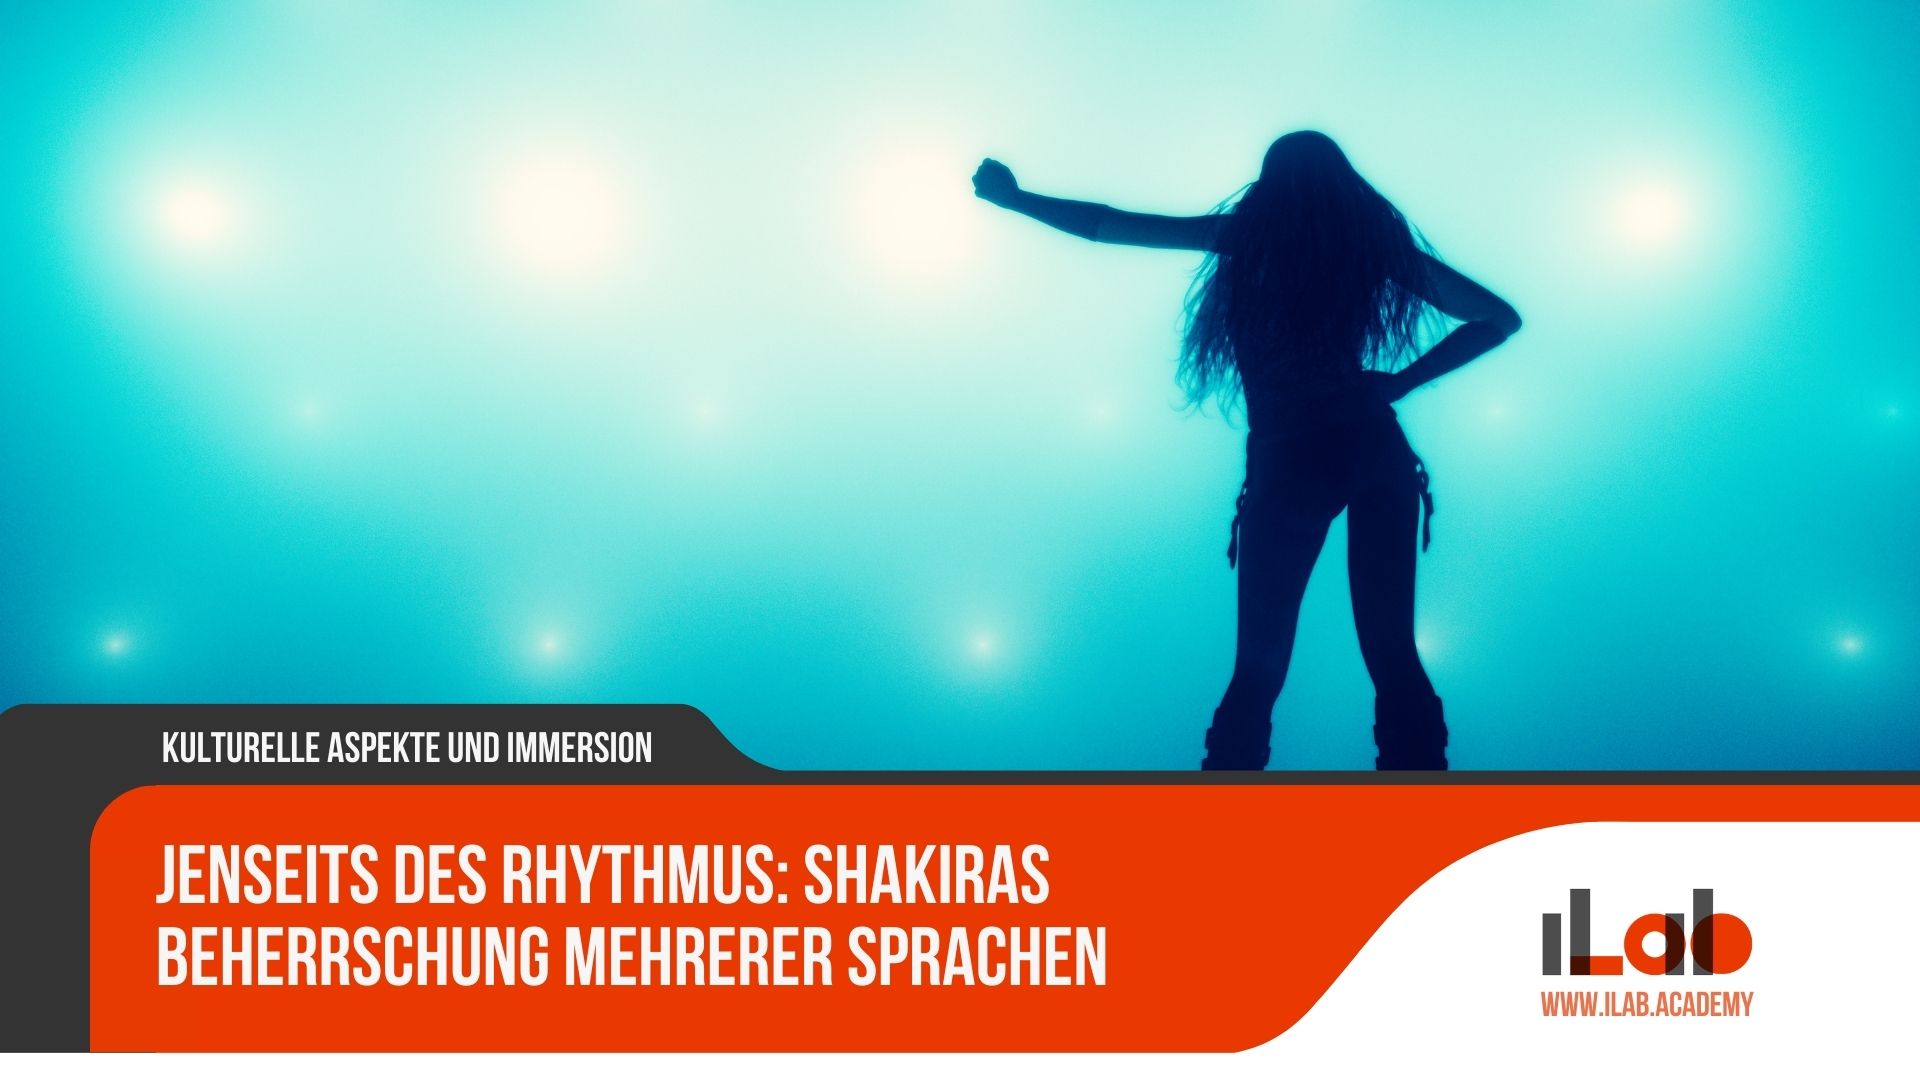 Jenseits des Rhythmus: Shakiras Beherrschung mehrerer Sprachen